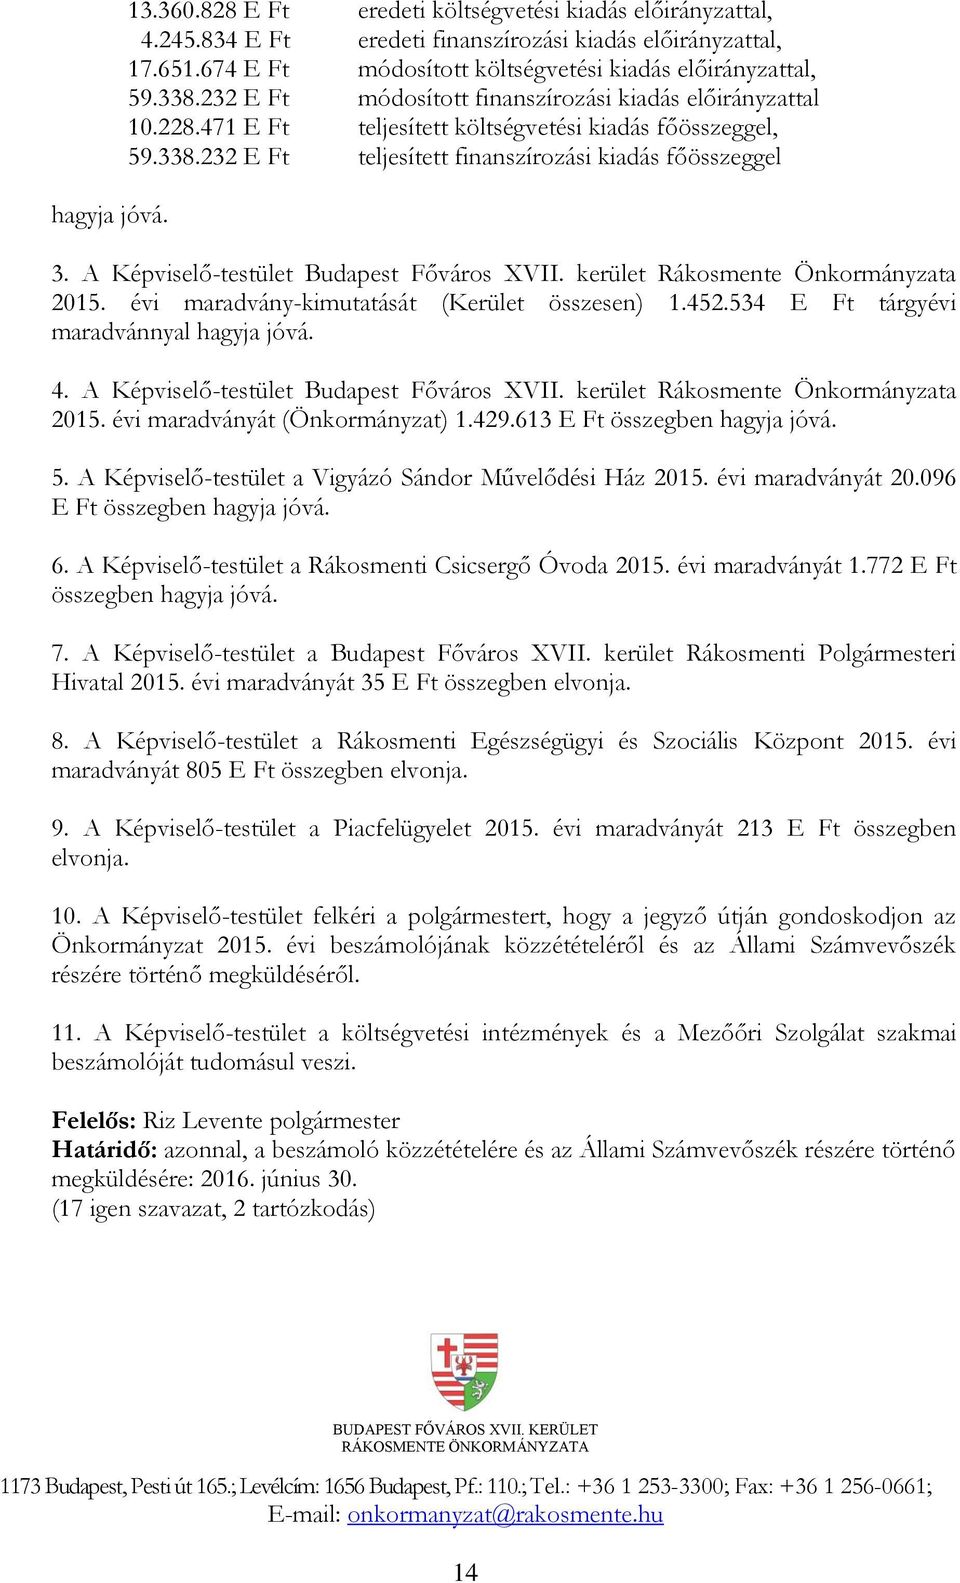 A Képviselő-testület Budapest Főváros XVII. kerület Rákosmente Önkormányzata 2015. évi maradvány-kimutatását (Kerület összesen) 1.452.534 E Ft tárgyévi maradvánnyal hagyja jóvá. 4.